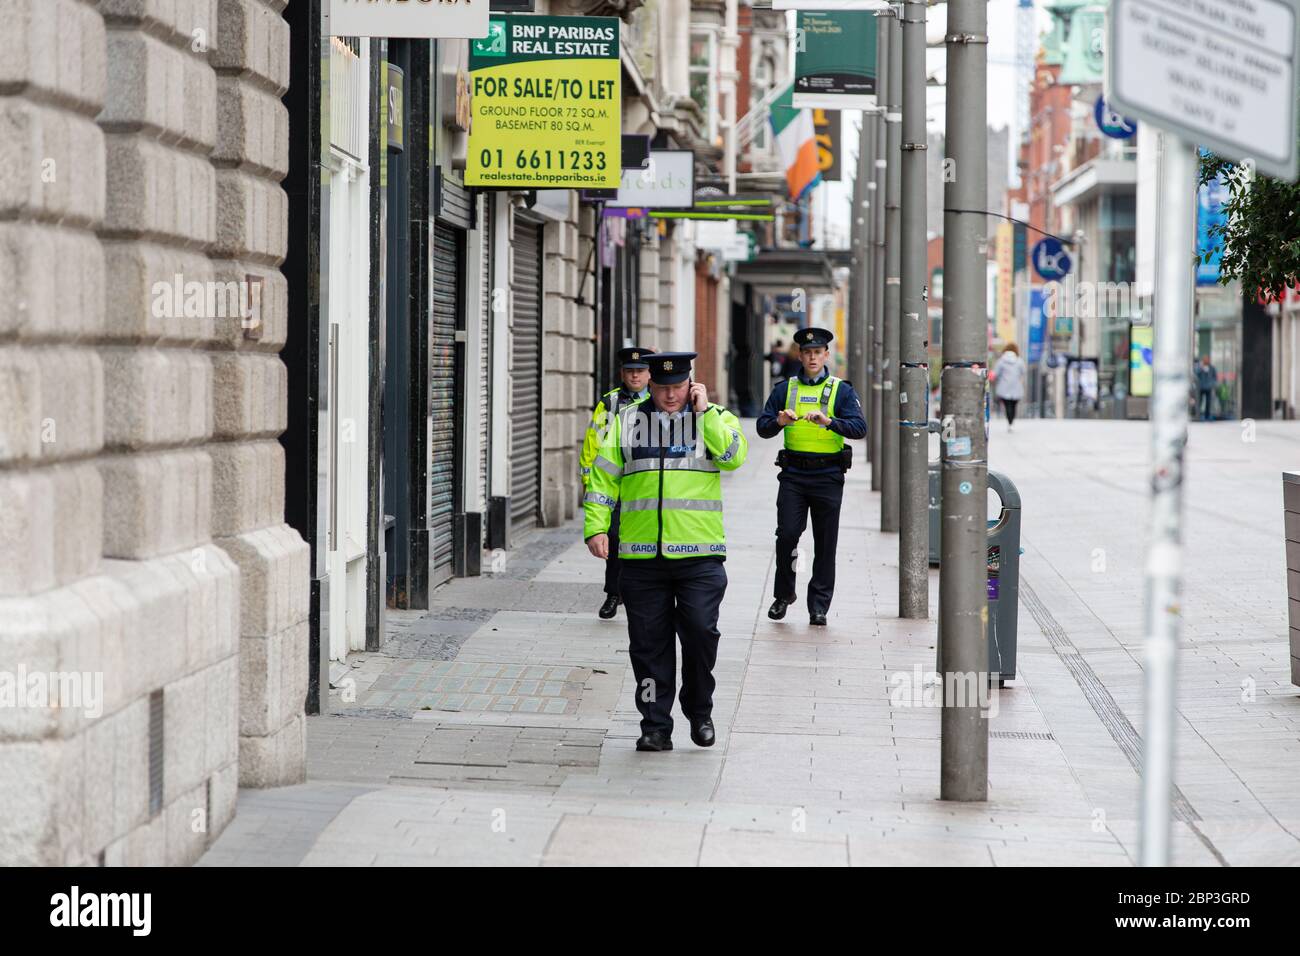 Dublín, Irlanda. Mayo de 2020. La caída de las piernas y el tráfico en el centro de la ciudad de Dublín y las tiendas y negocios cerraron debido a las restricciones pandémicas Covid-19. Foto de stock